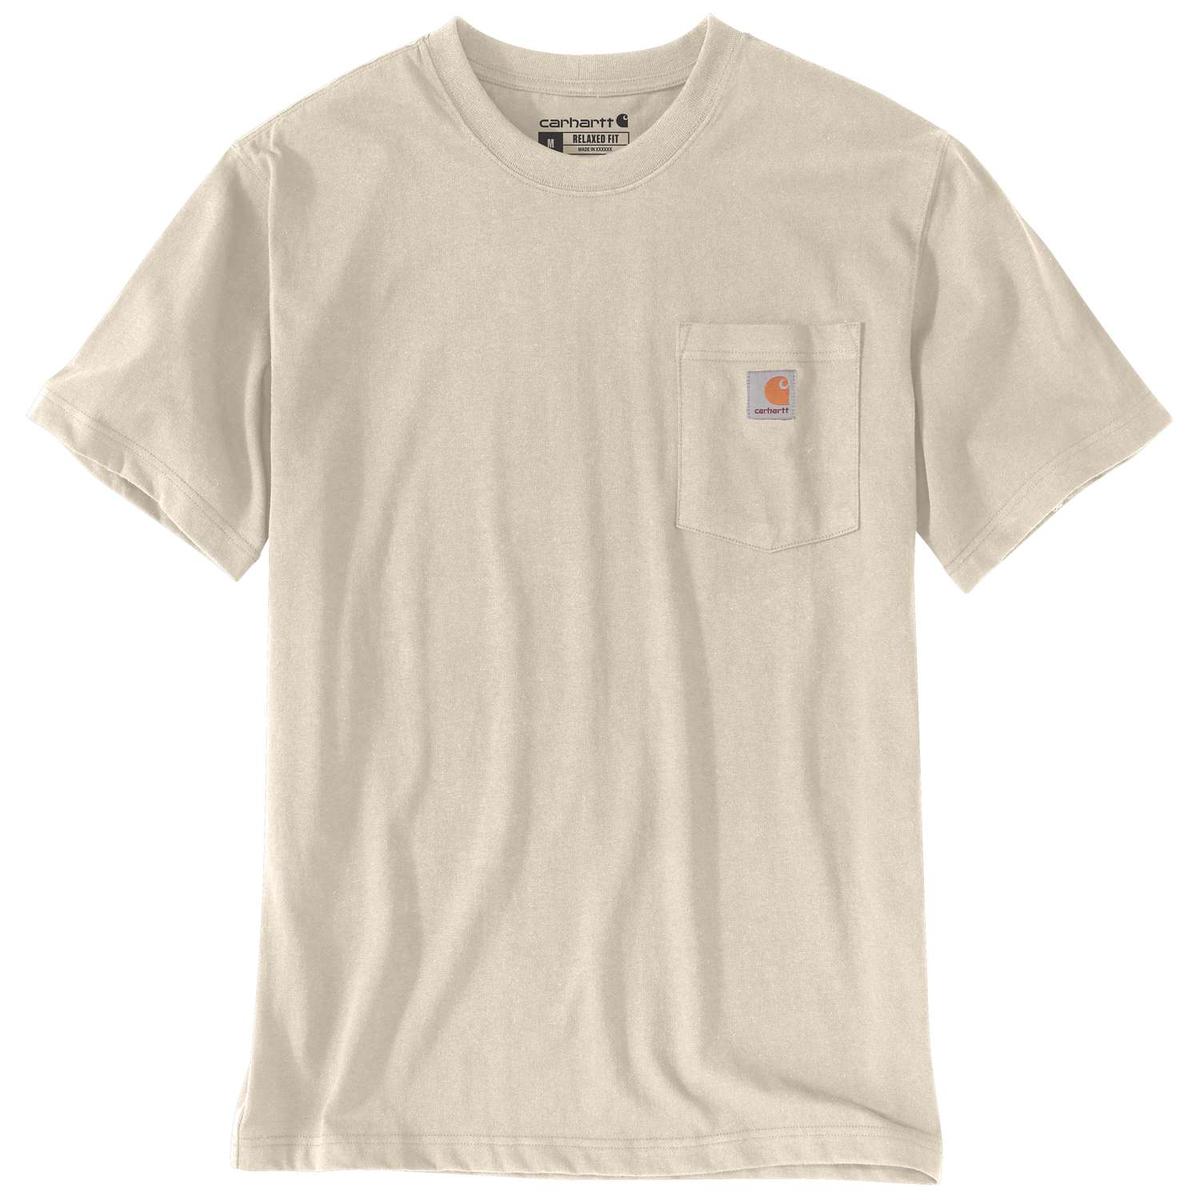 Carhartt T-Shirt mit Brusttasche - 36